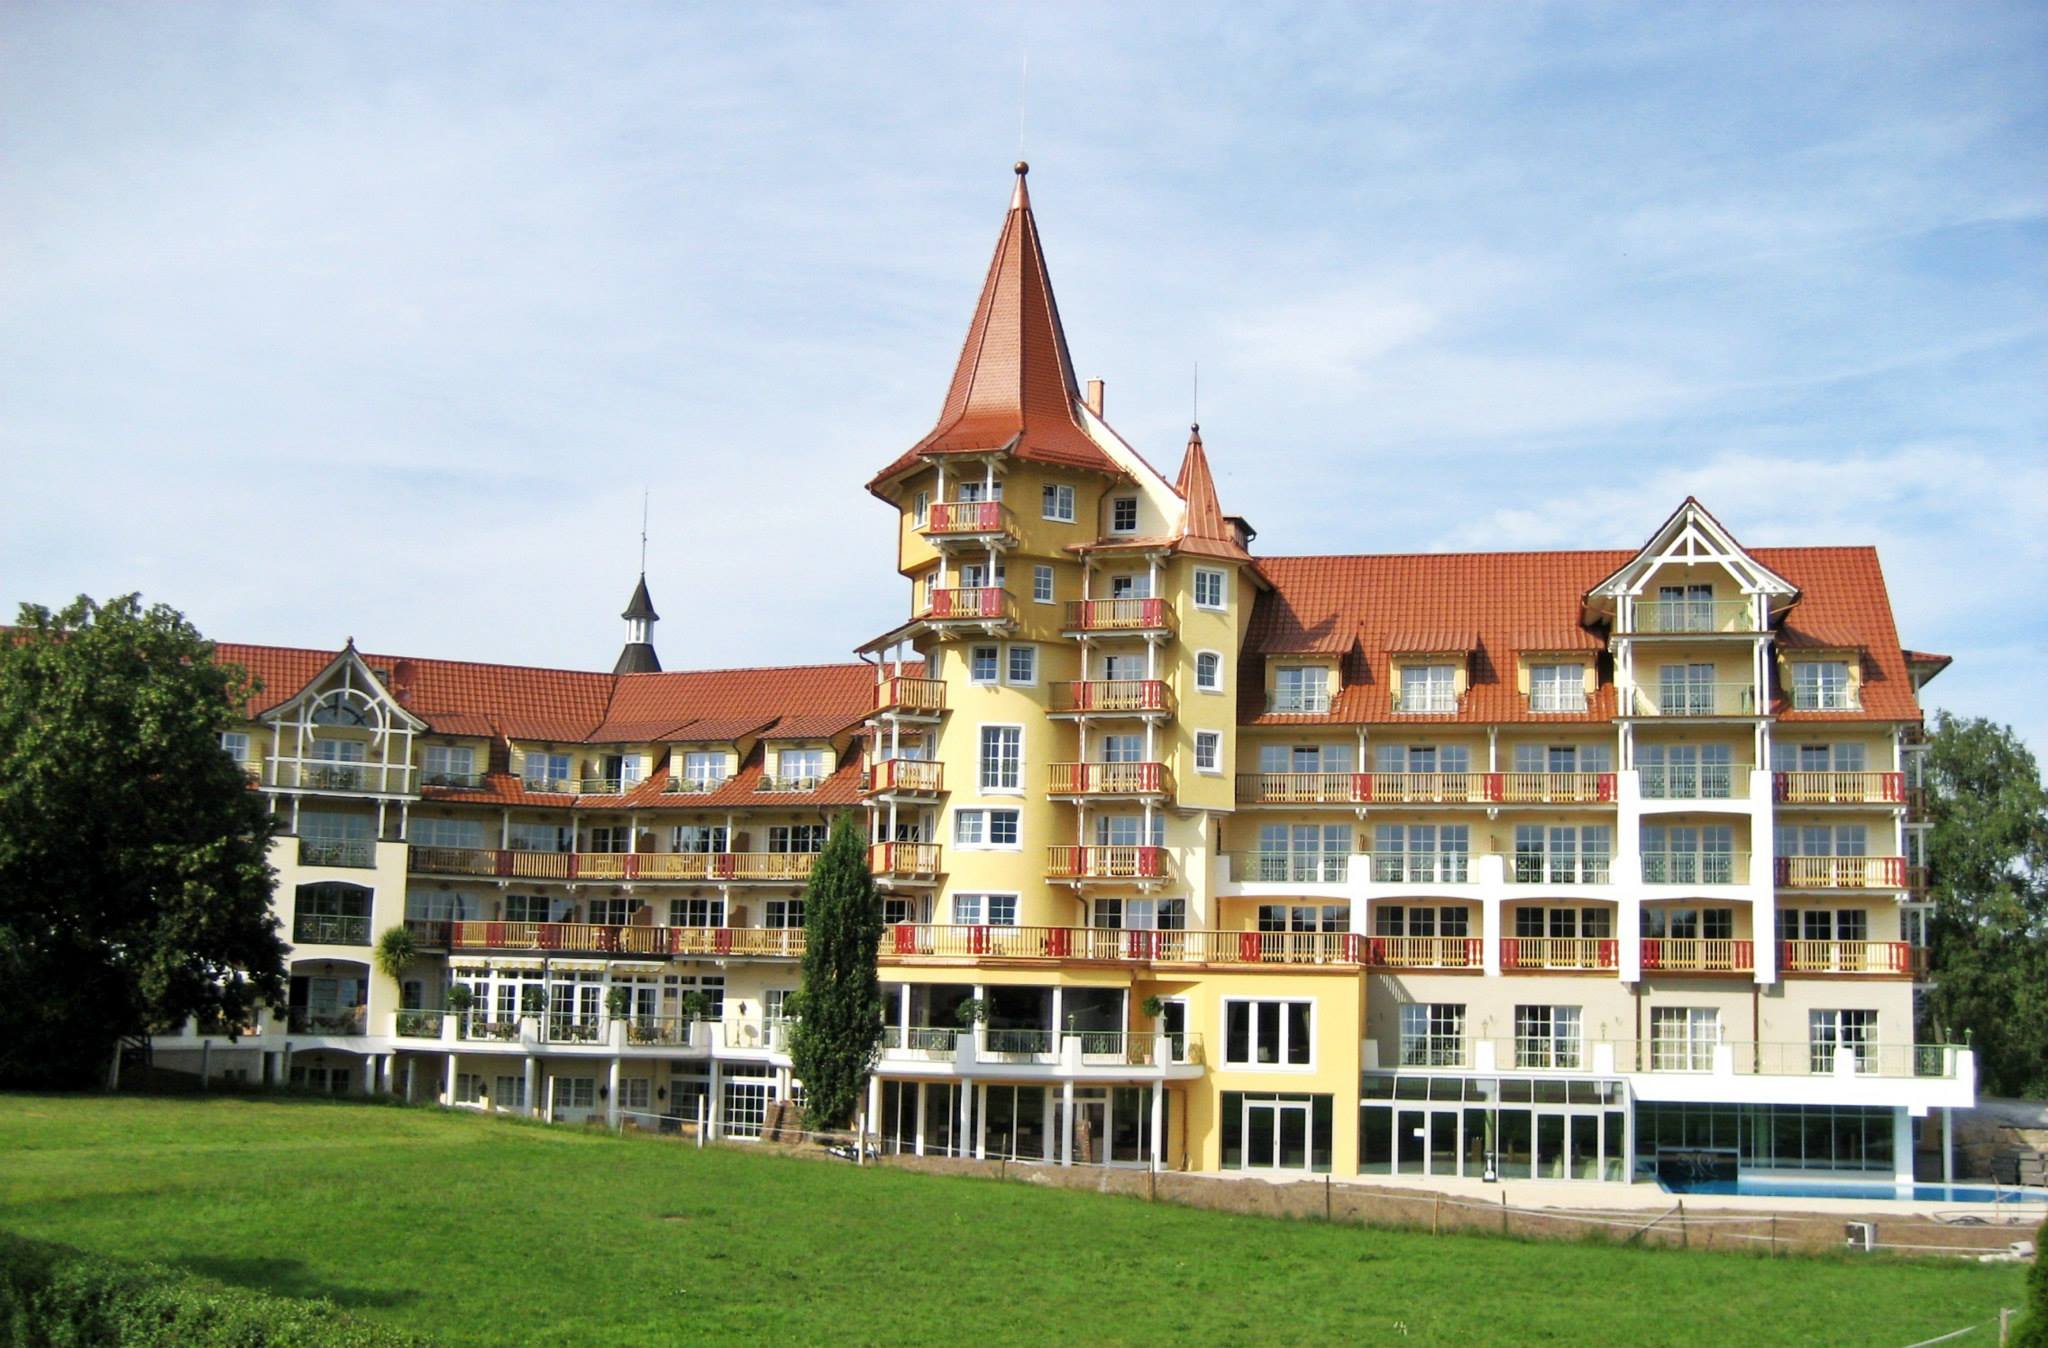 Vital - Hotel Meiser